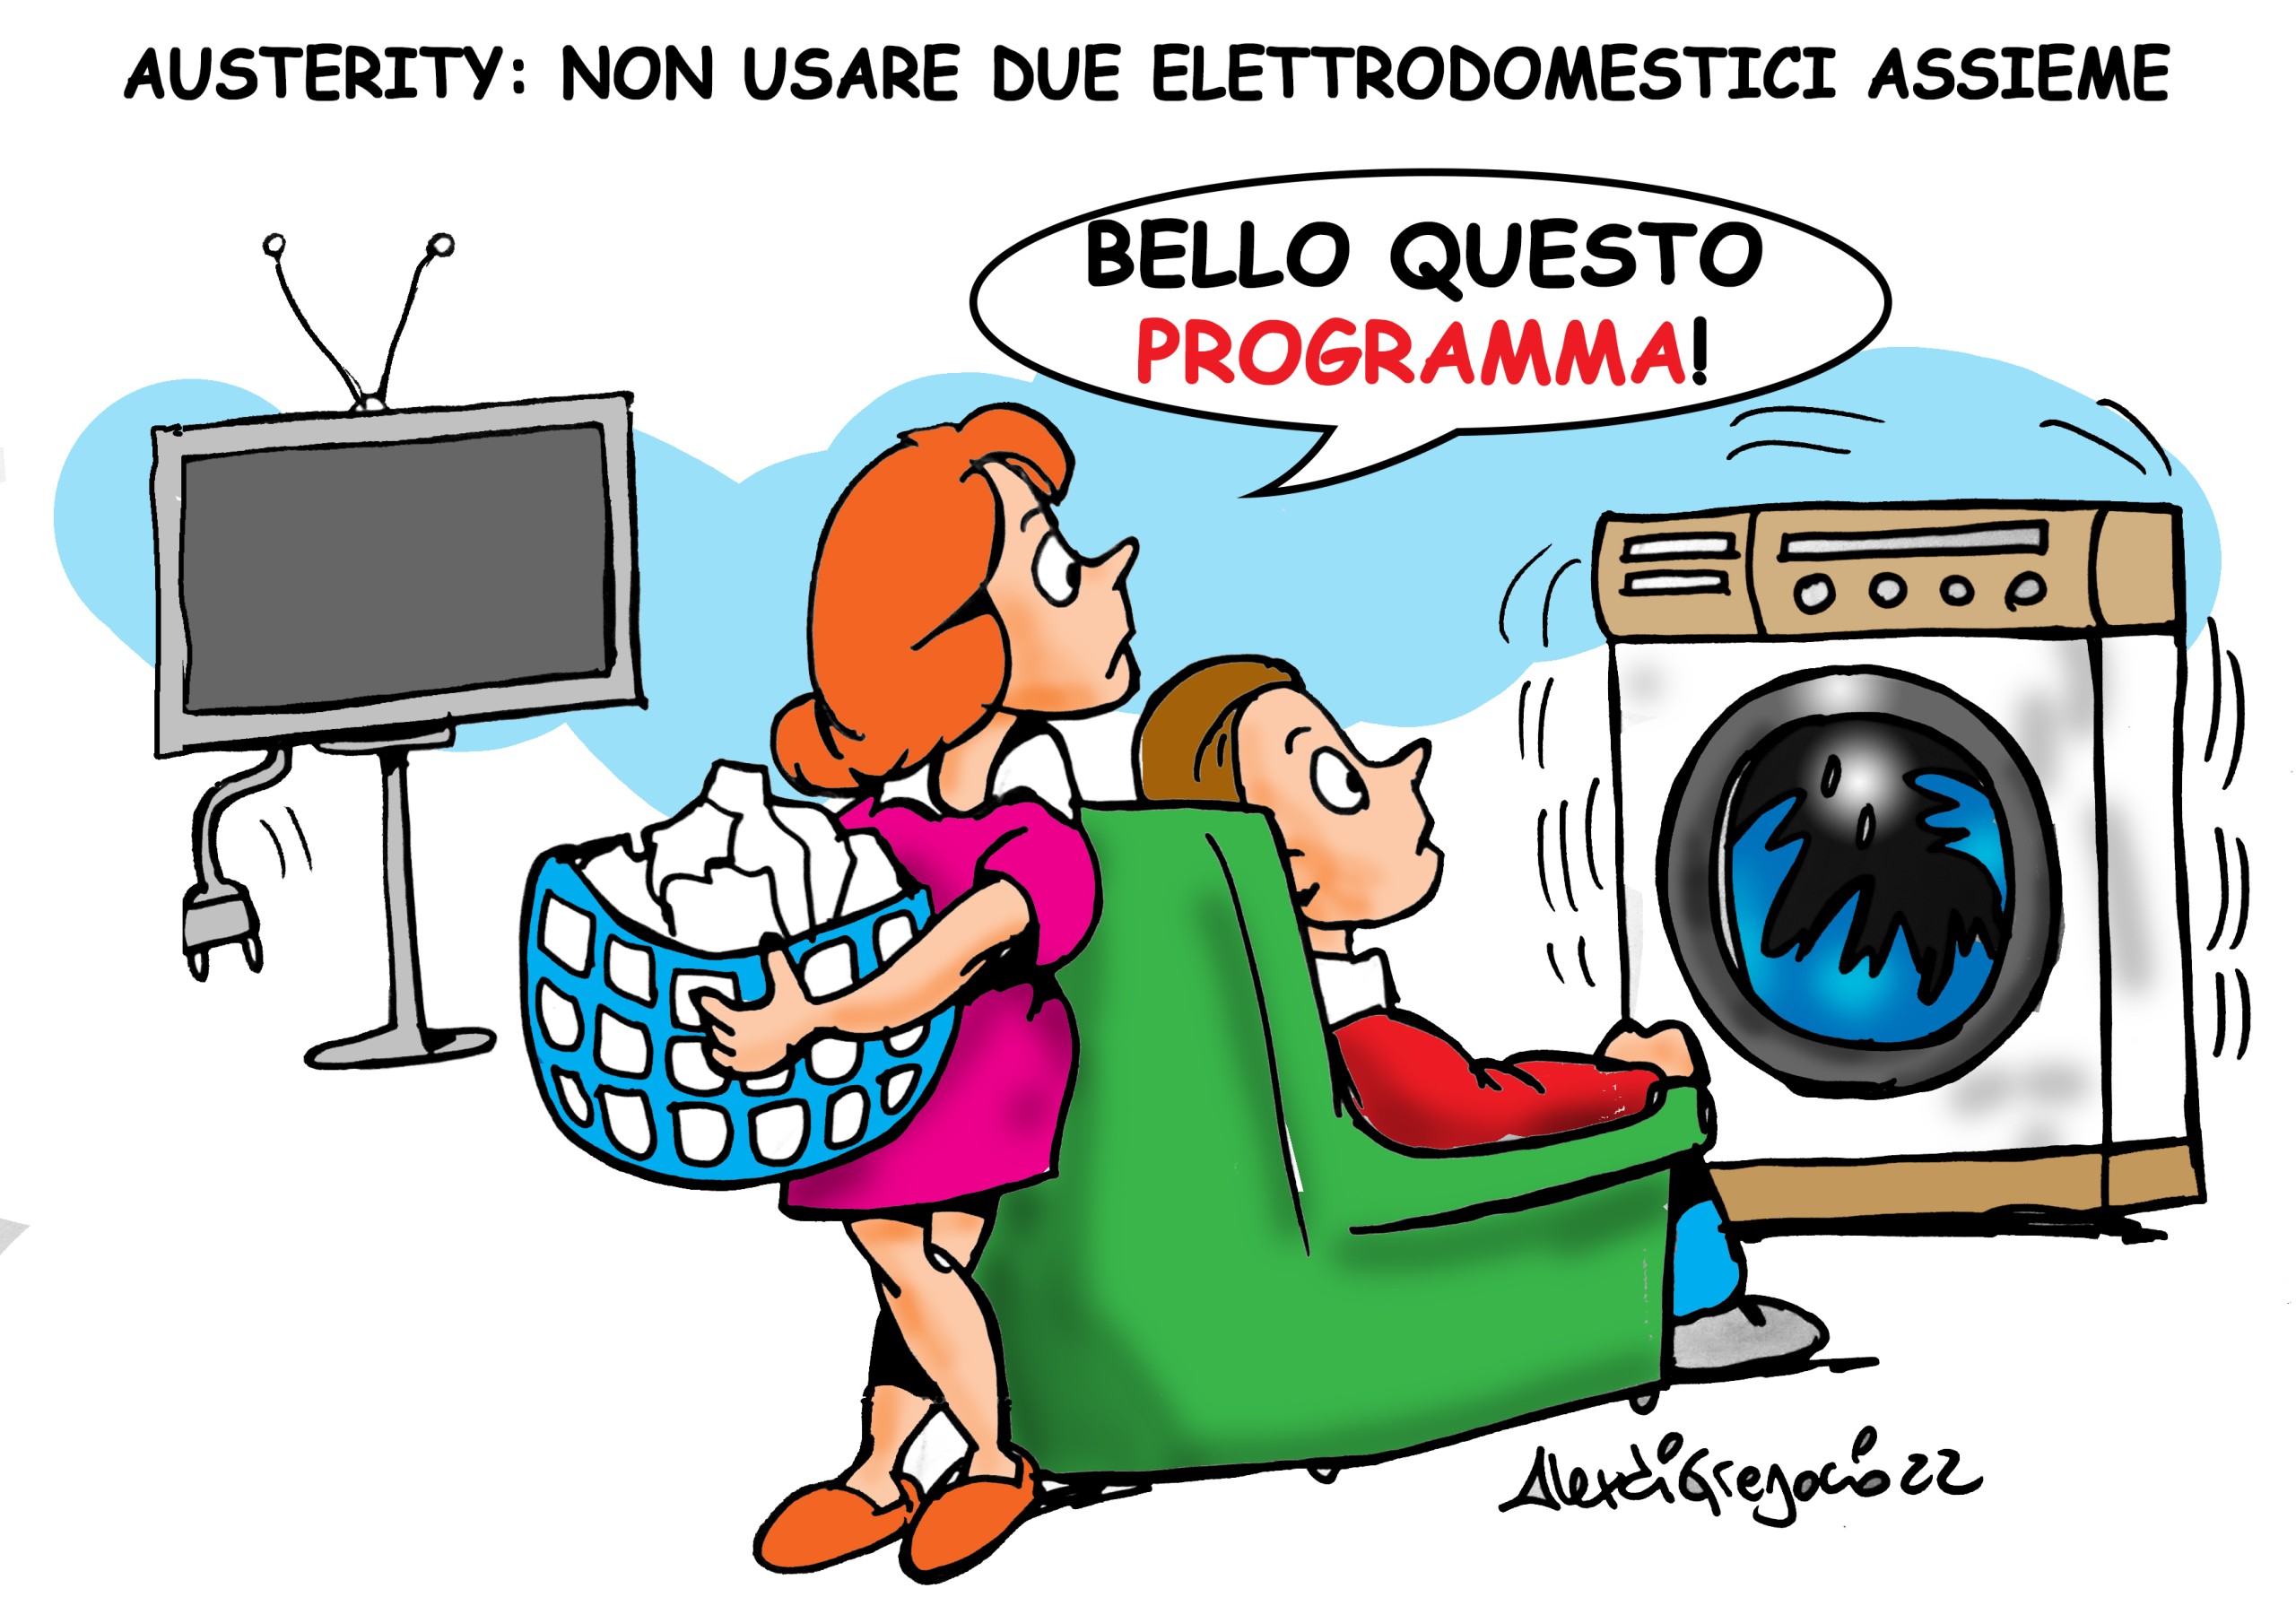 Austerity: non usare due elettrodomestici assieme